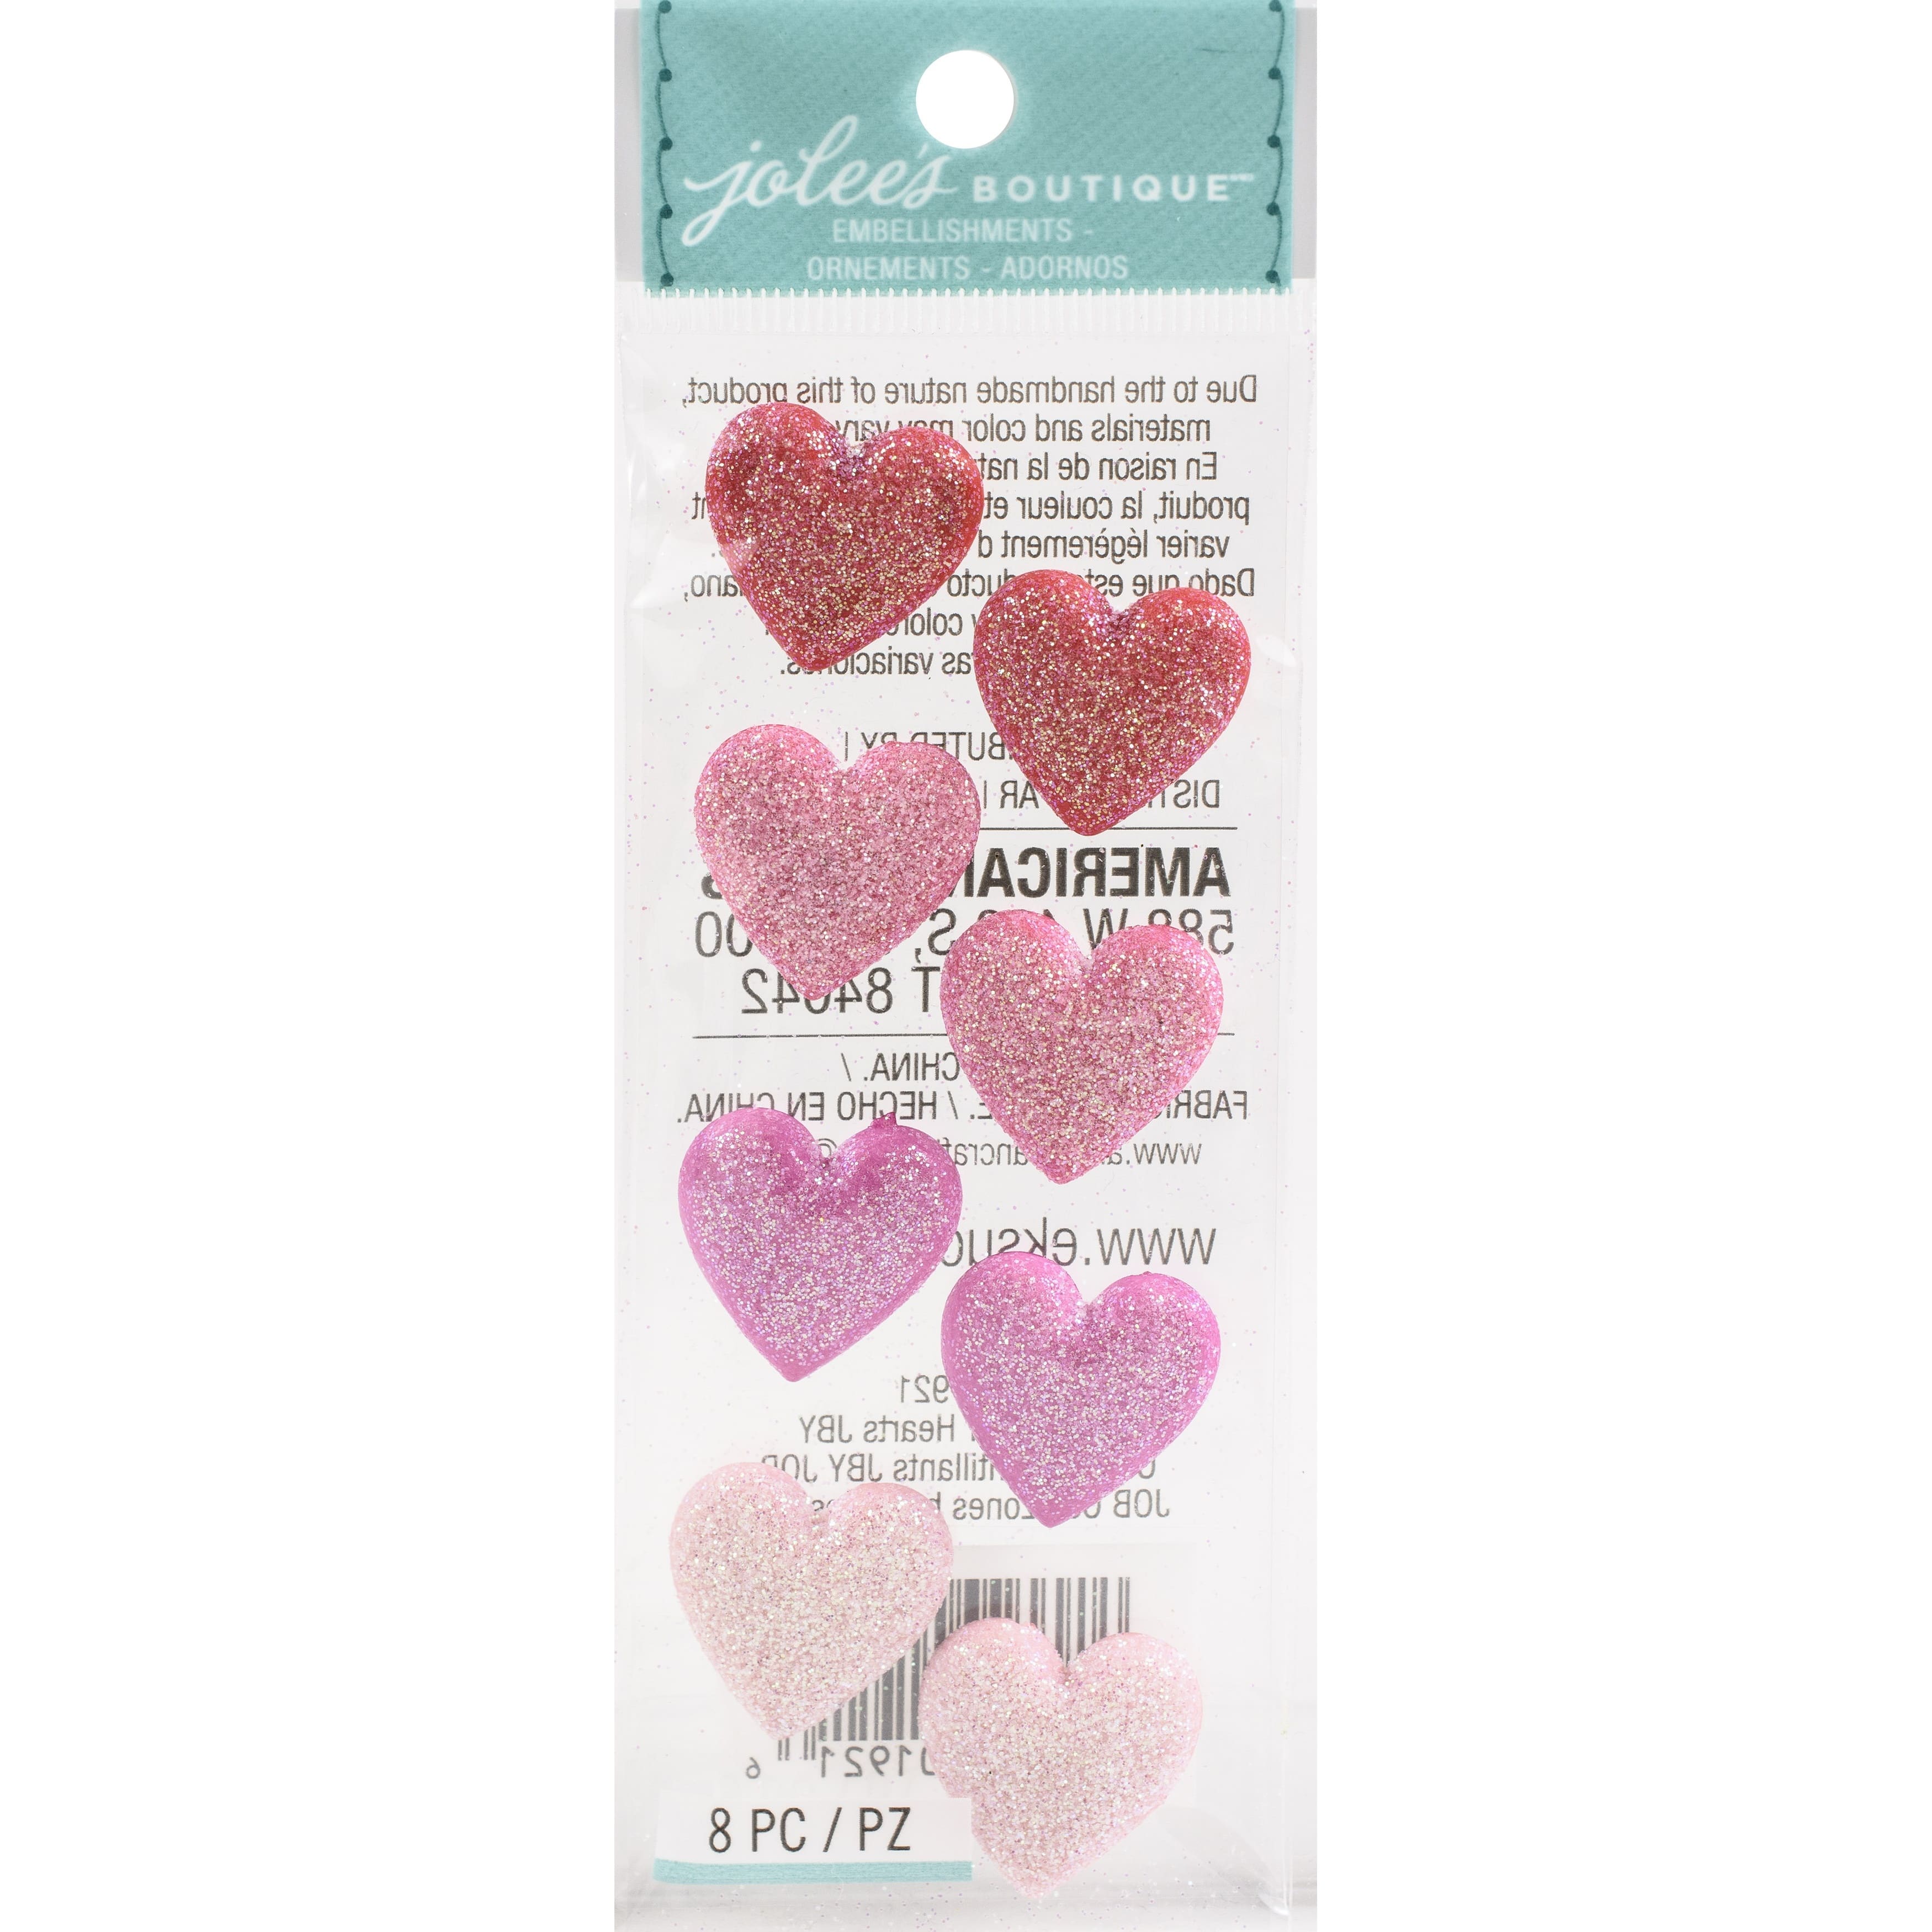 Glitter heart sticker pack - Glitter Heart Sticker Pack - Sticker